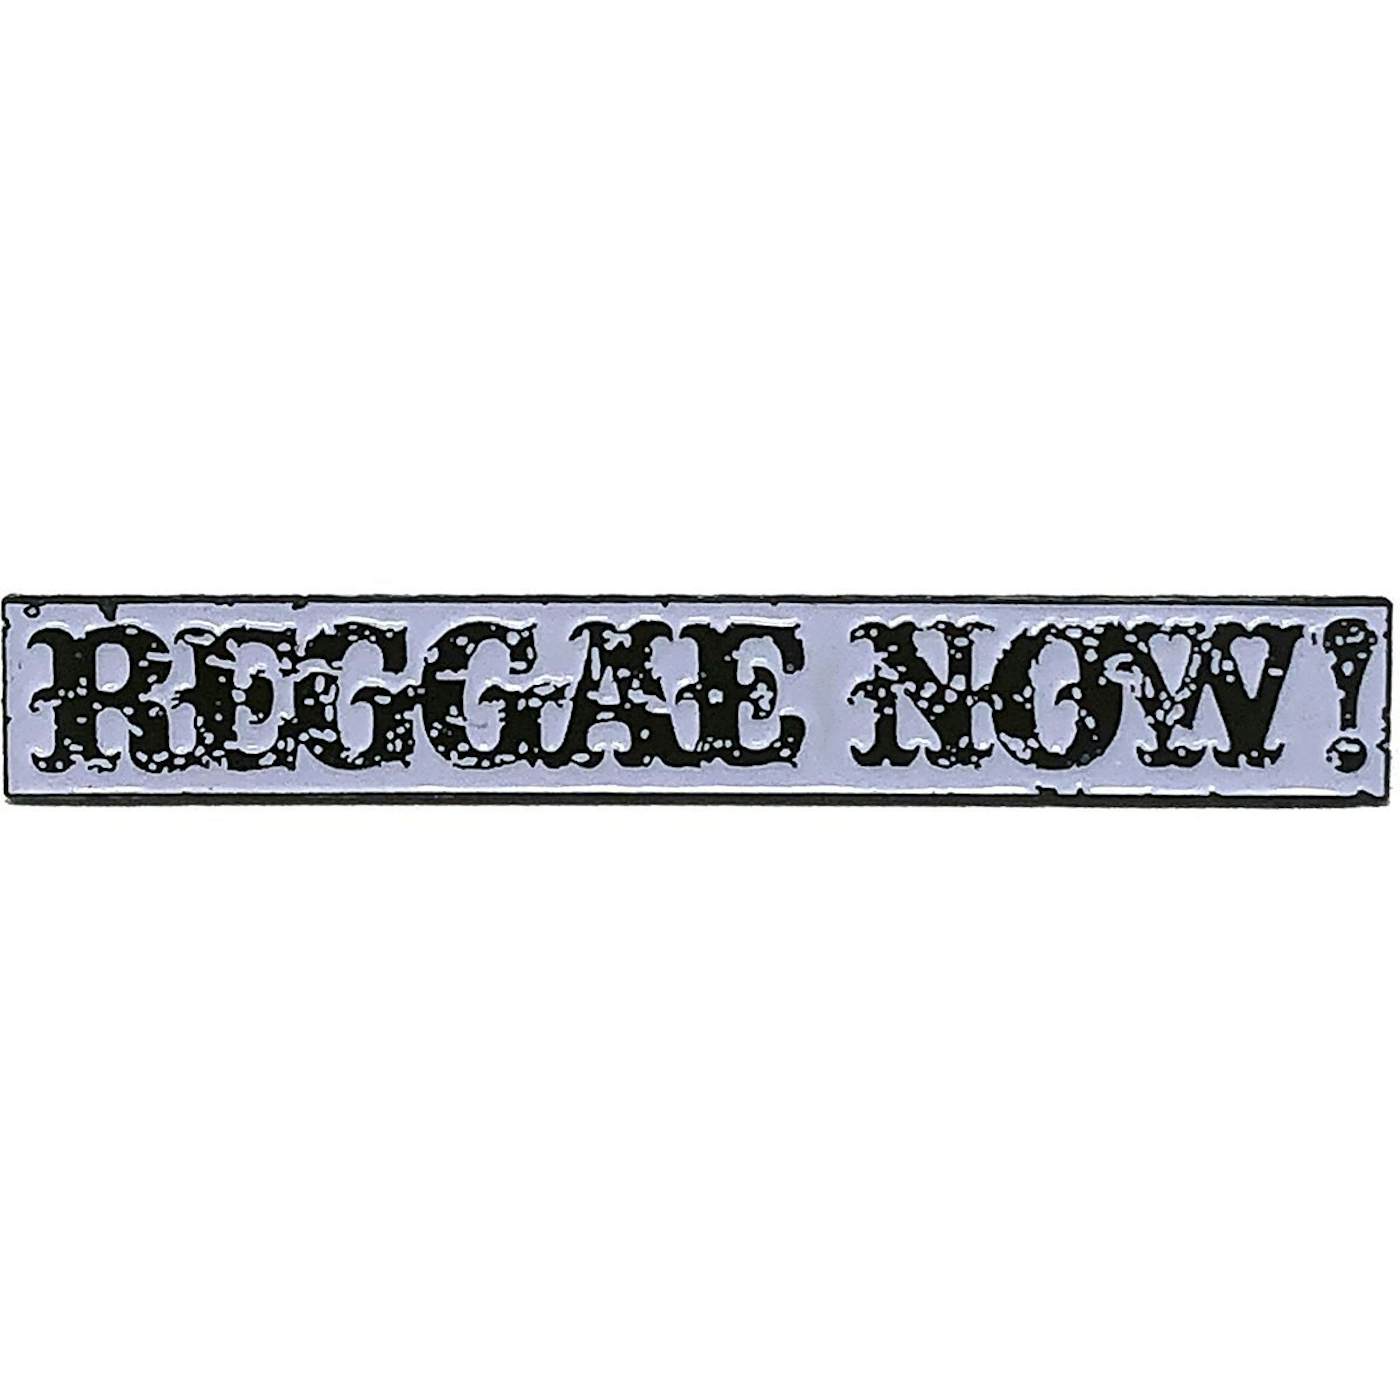 The Aggrolites - Reggae Now! Text - 2.5" Enamel Pin